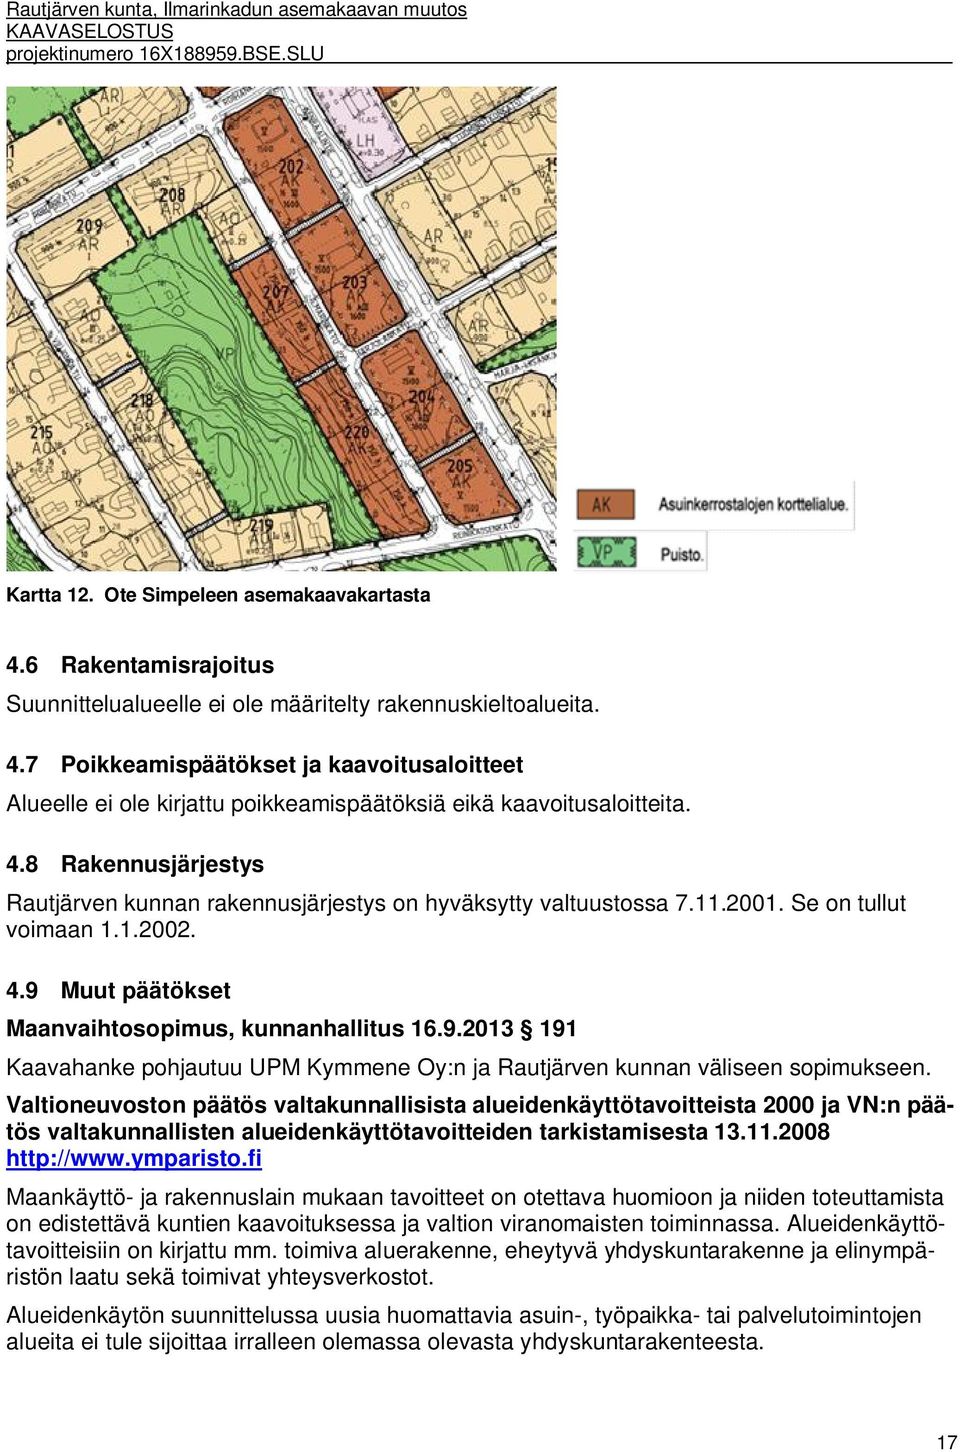 Muut päätökset Maanvaihtosopimus, kunnanhallitus 16.9.2013 191 Kaavahanke pohjautuu UPM Kymmene Oy:n ja Rautjärven kunnan väliseen sopimukseen.